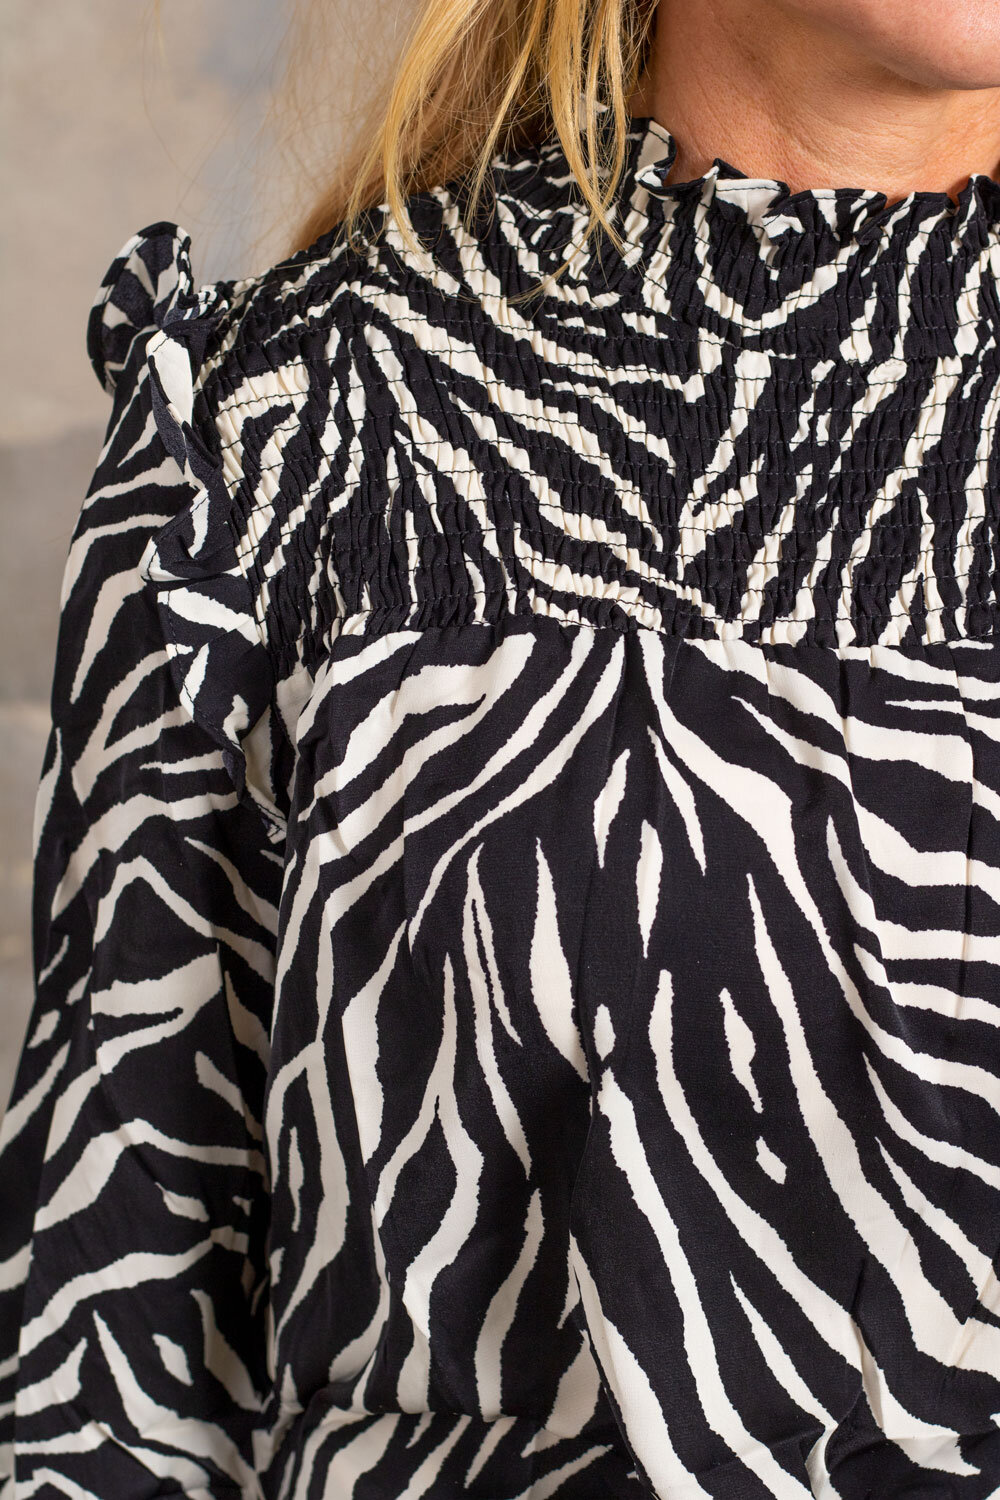 Vienna top - Zebra pattern - Black